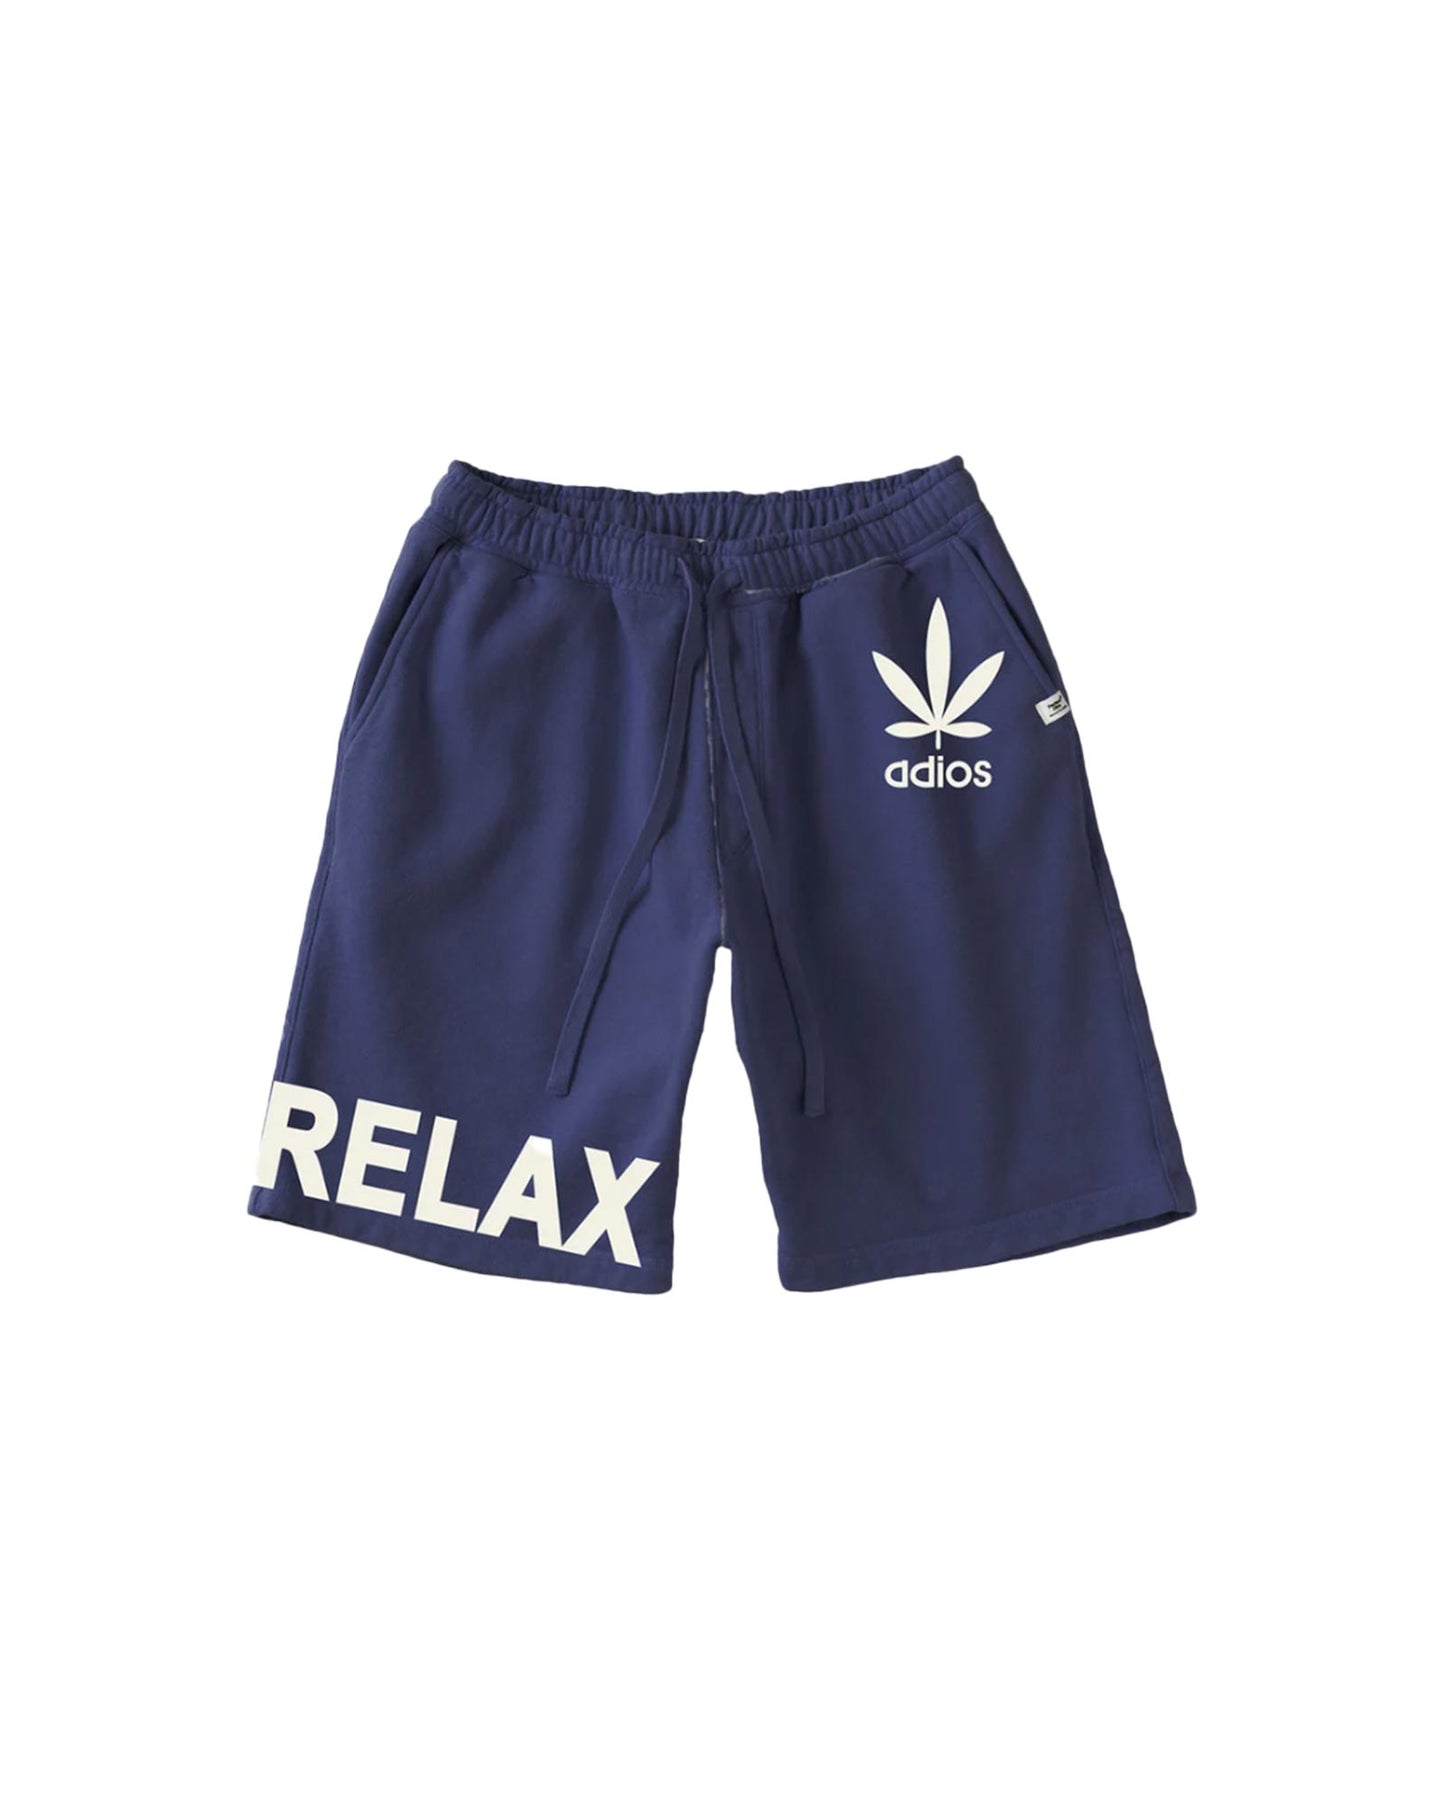 パーフェクトリブス/(adios & RELAX) Sweat Short Pants/ショートパンツ/Navy